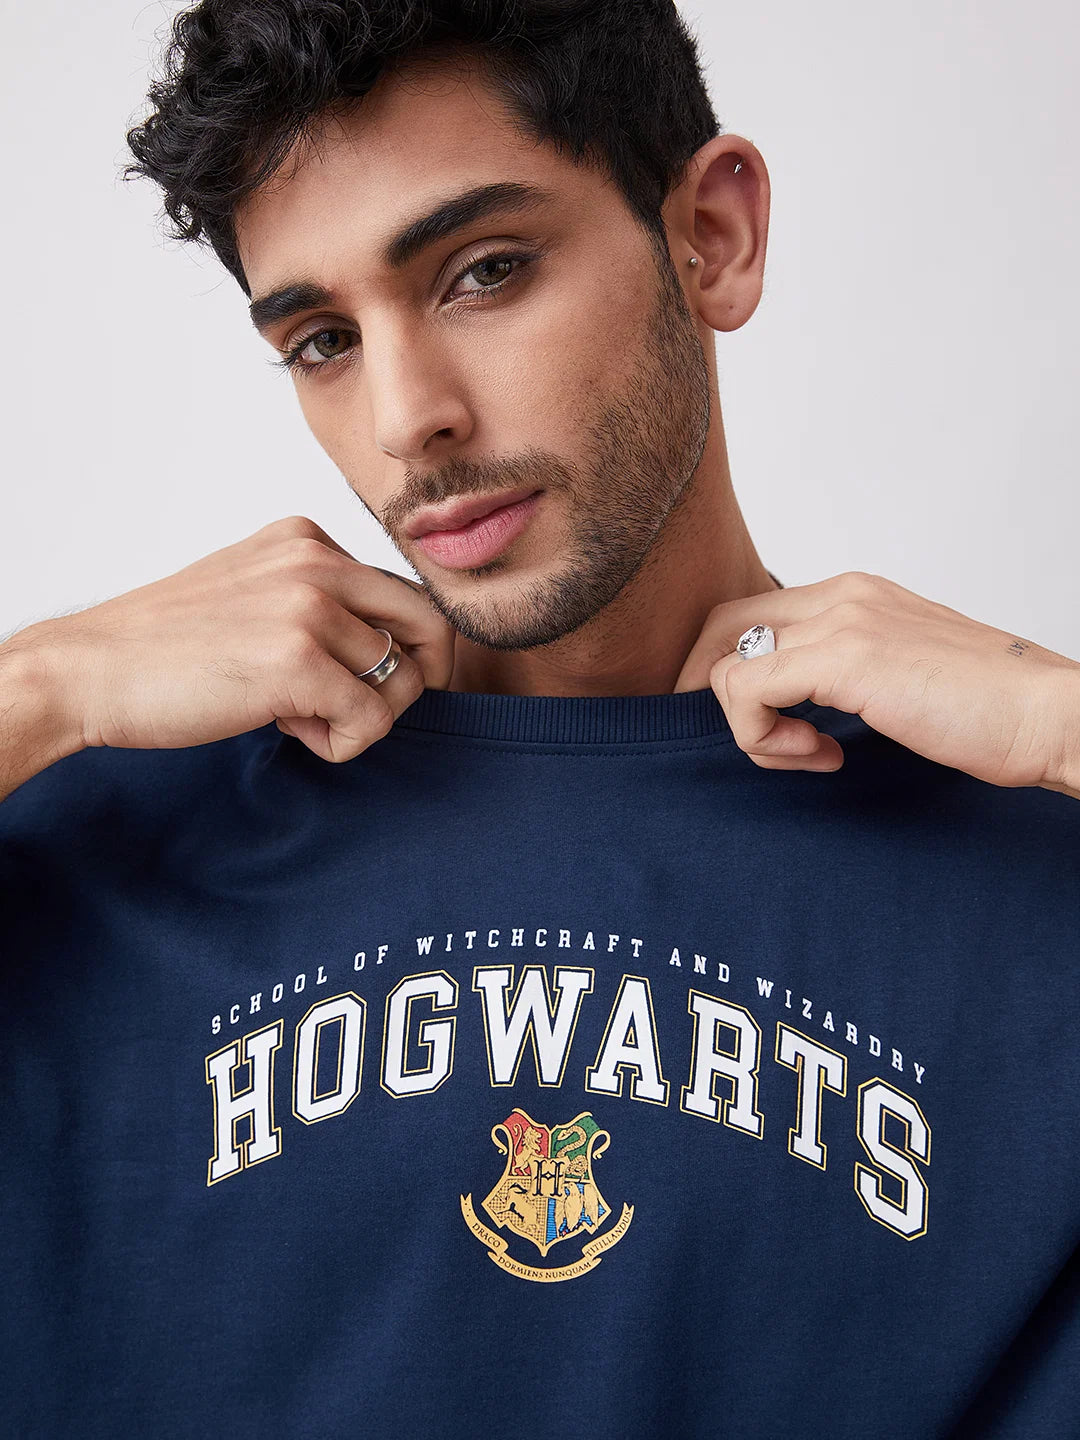 Harry Potter Hogwarts 07 (UK version)